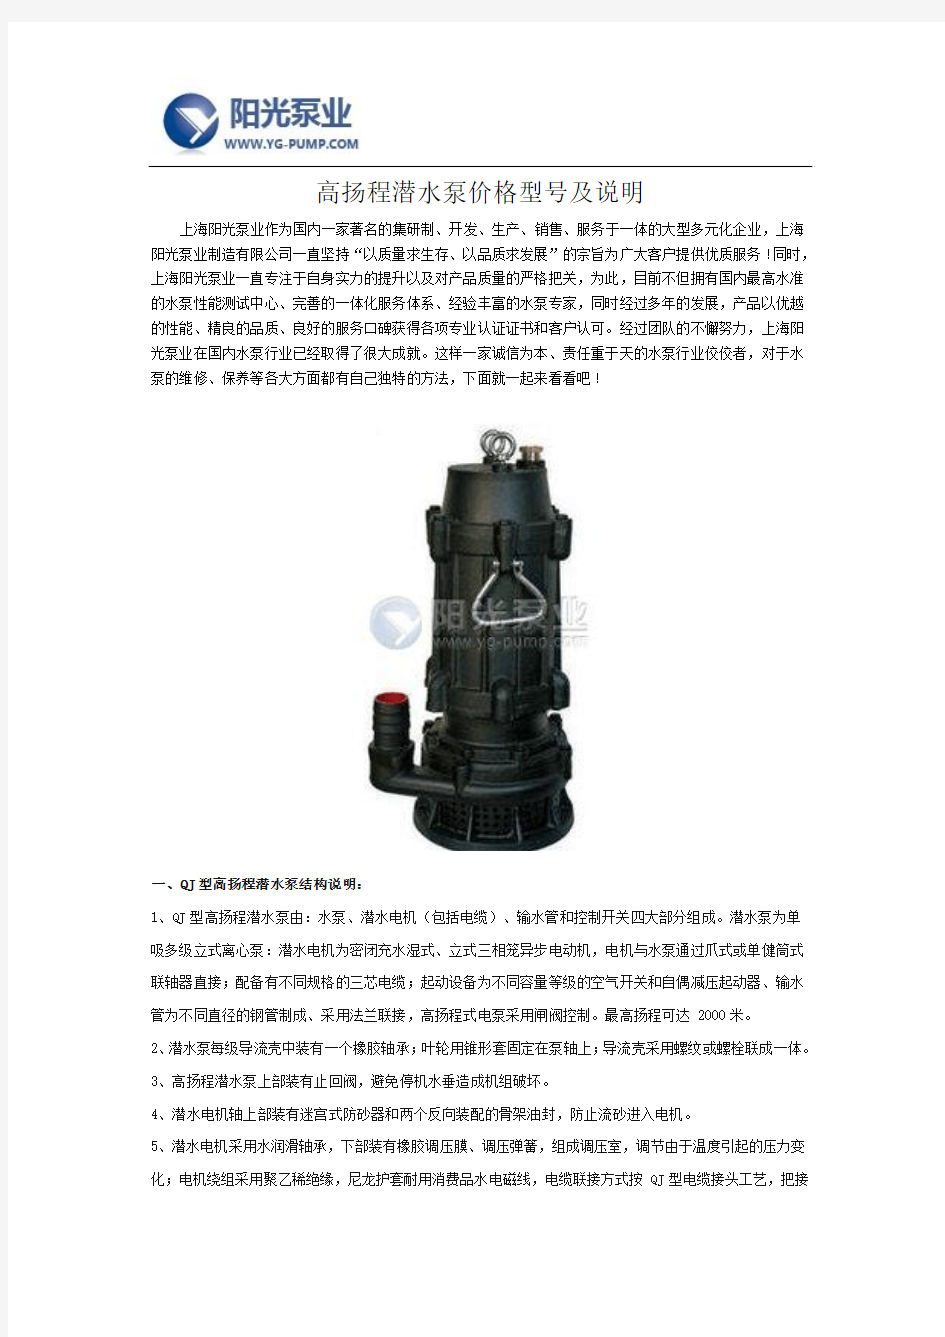 高扬程潜水泵价格型号及说明